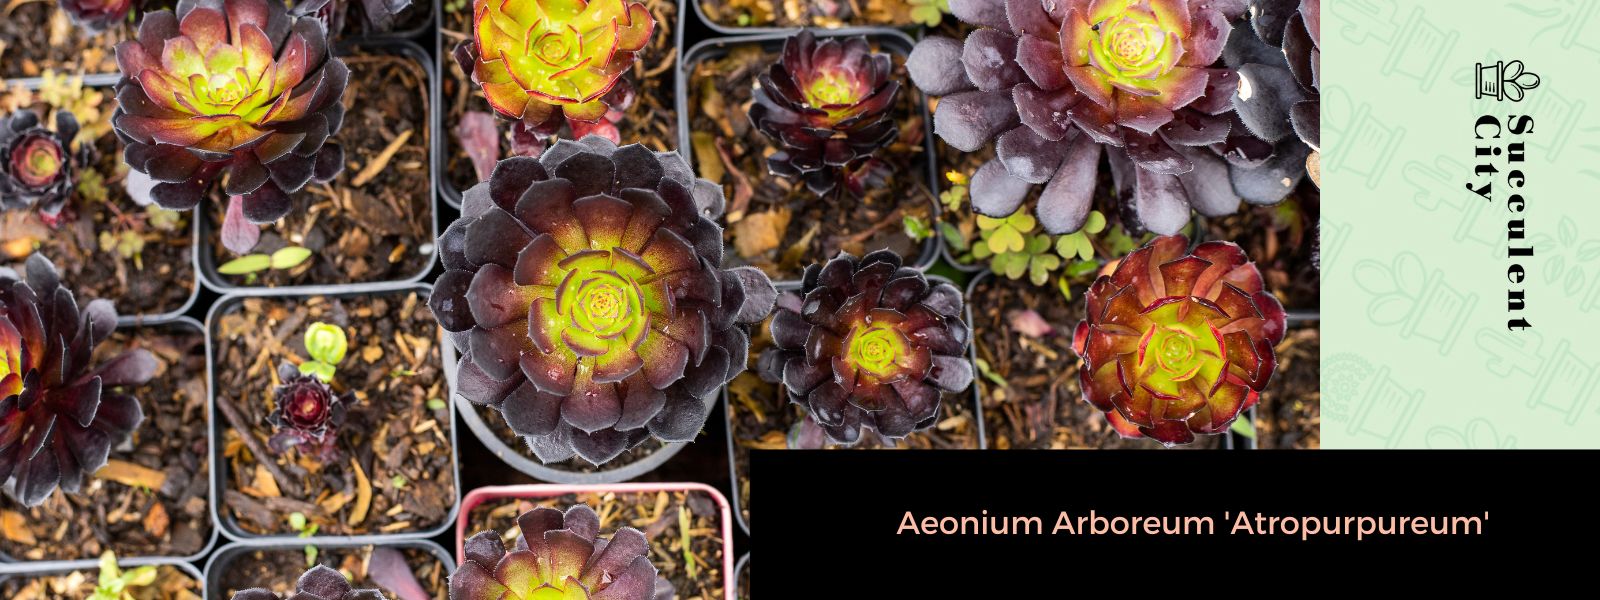 Aeonium Arboreum 'Atropurpureum'